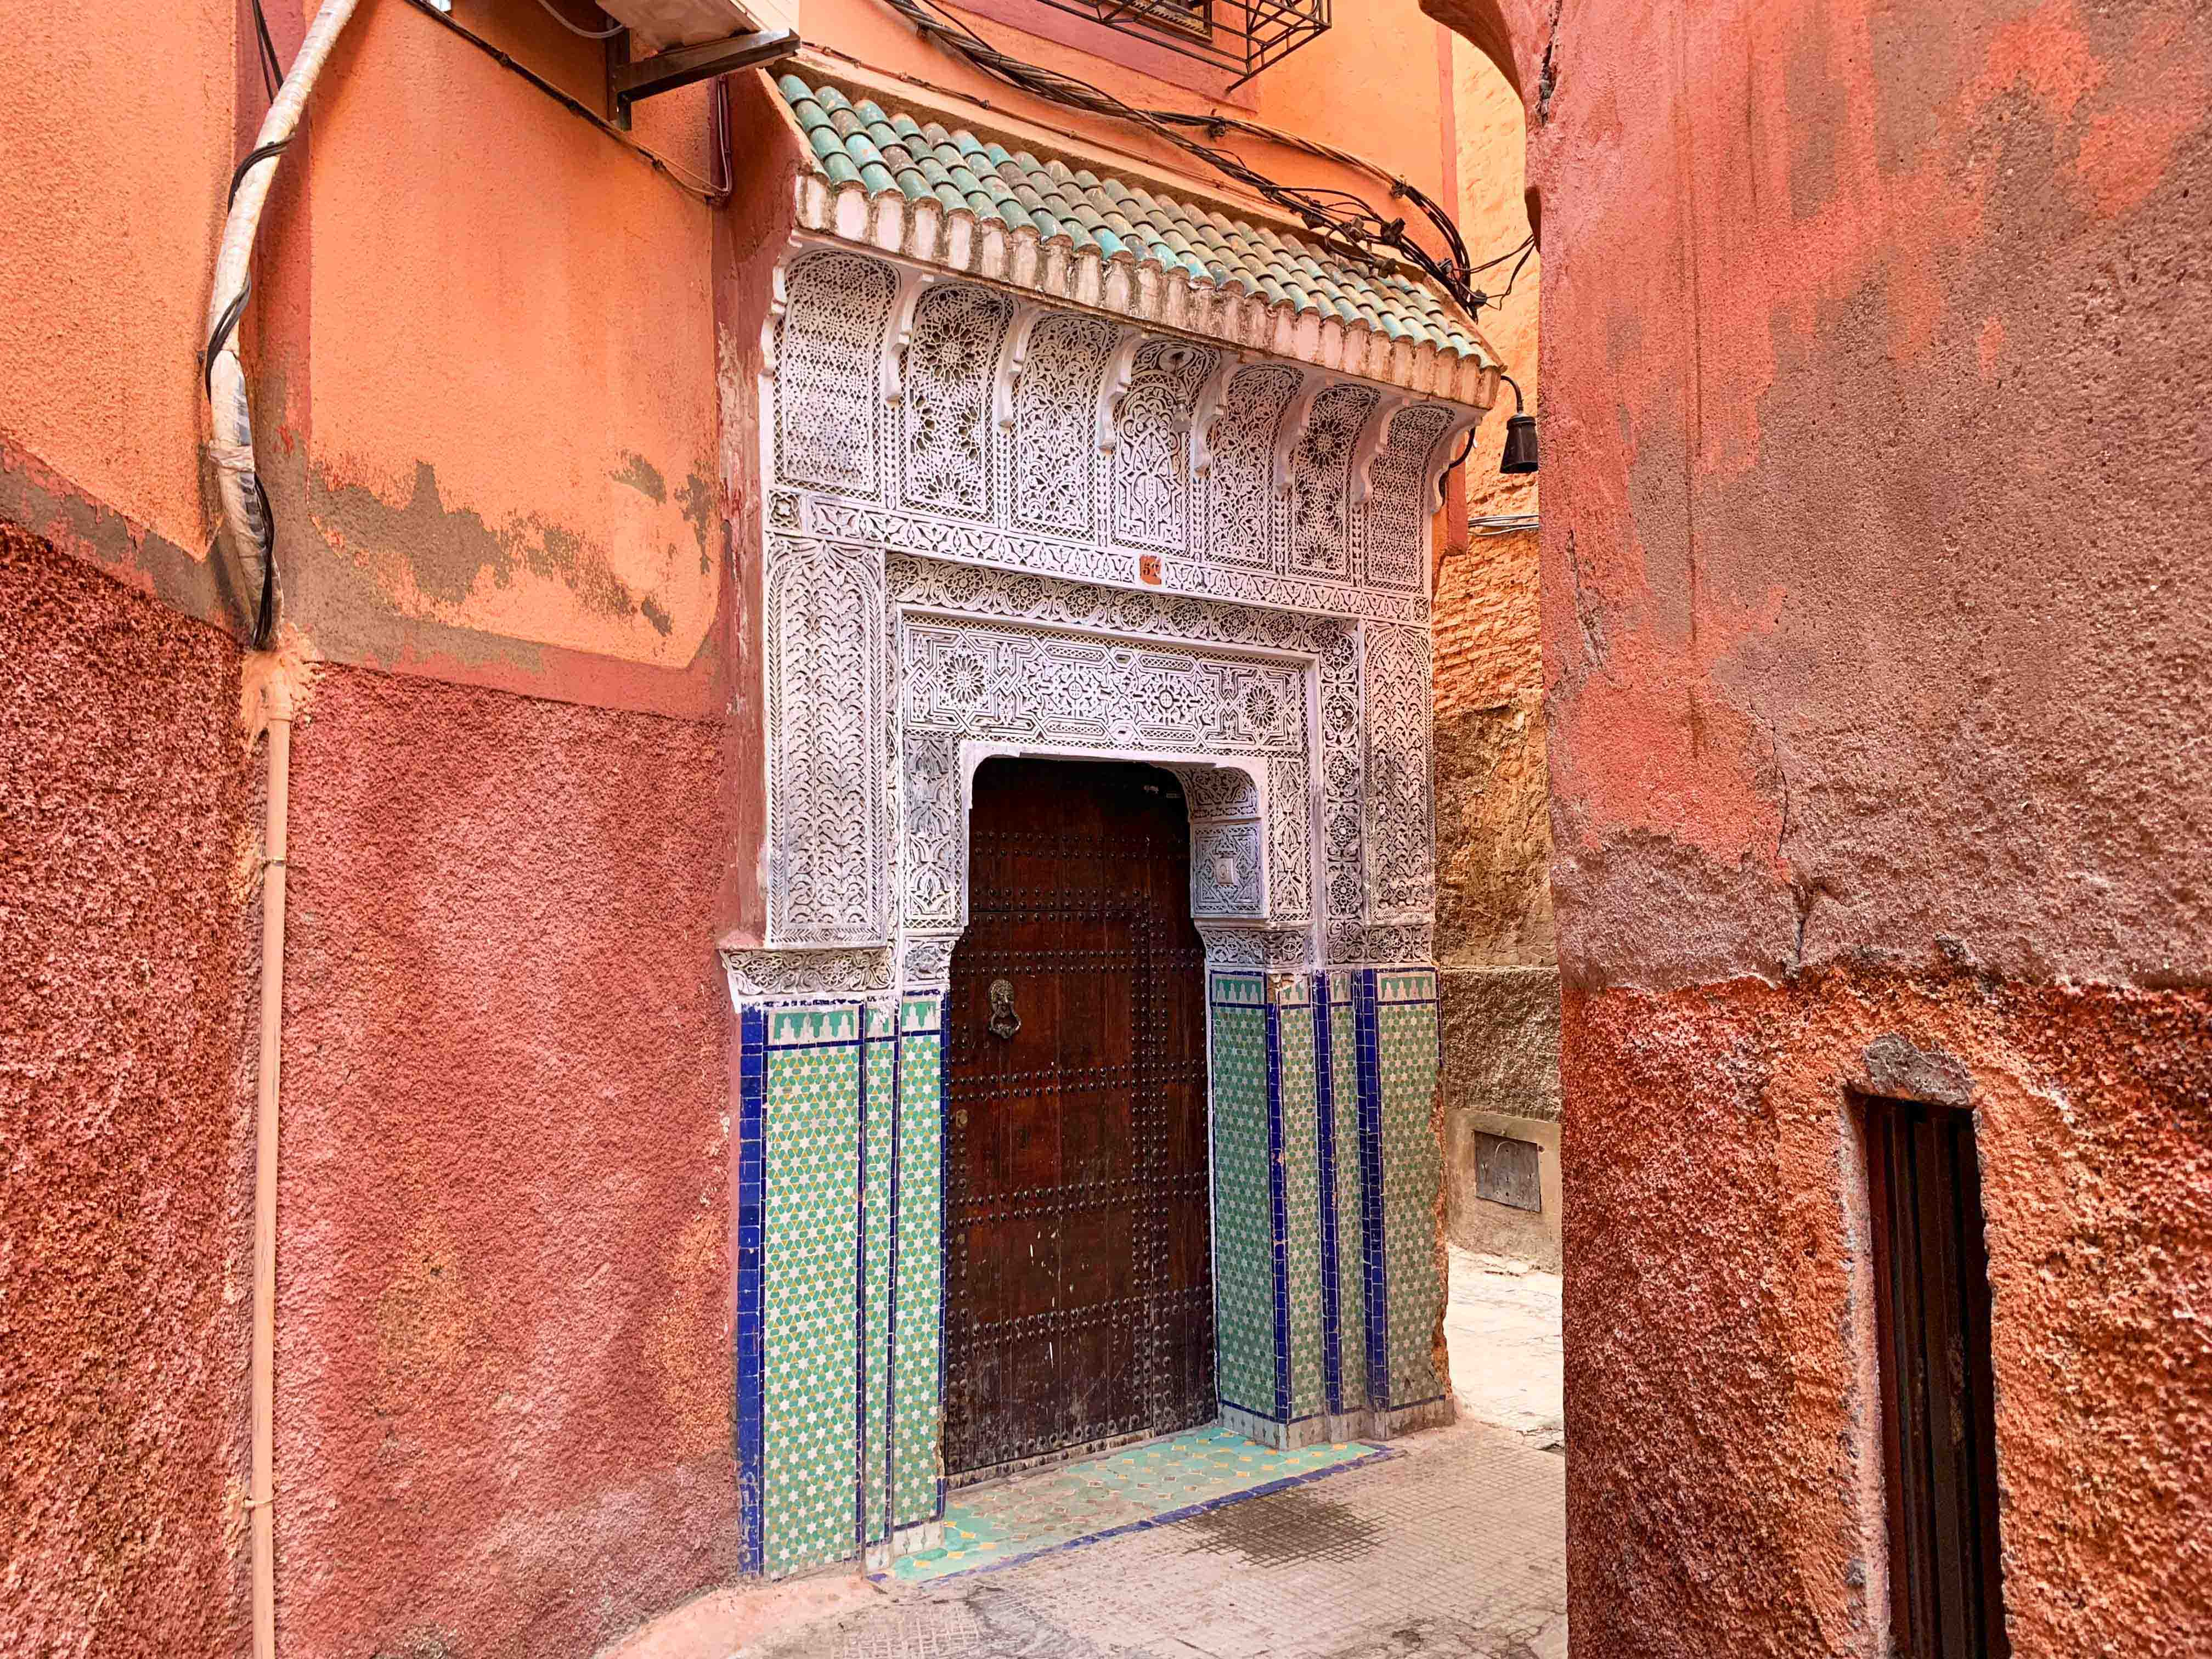 Wohnhaus in Marrakesch